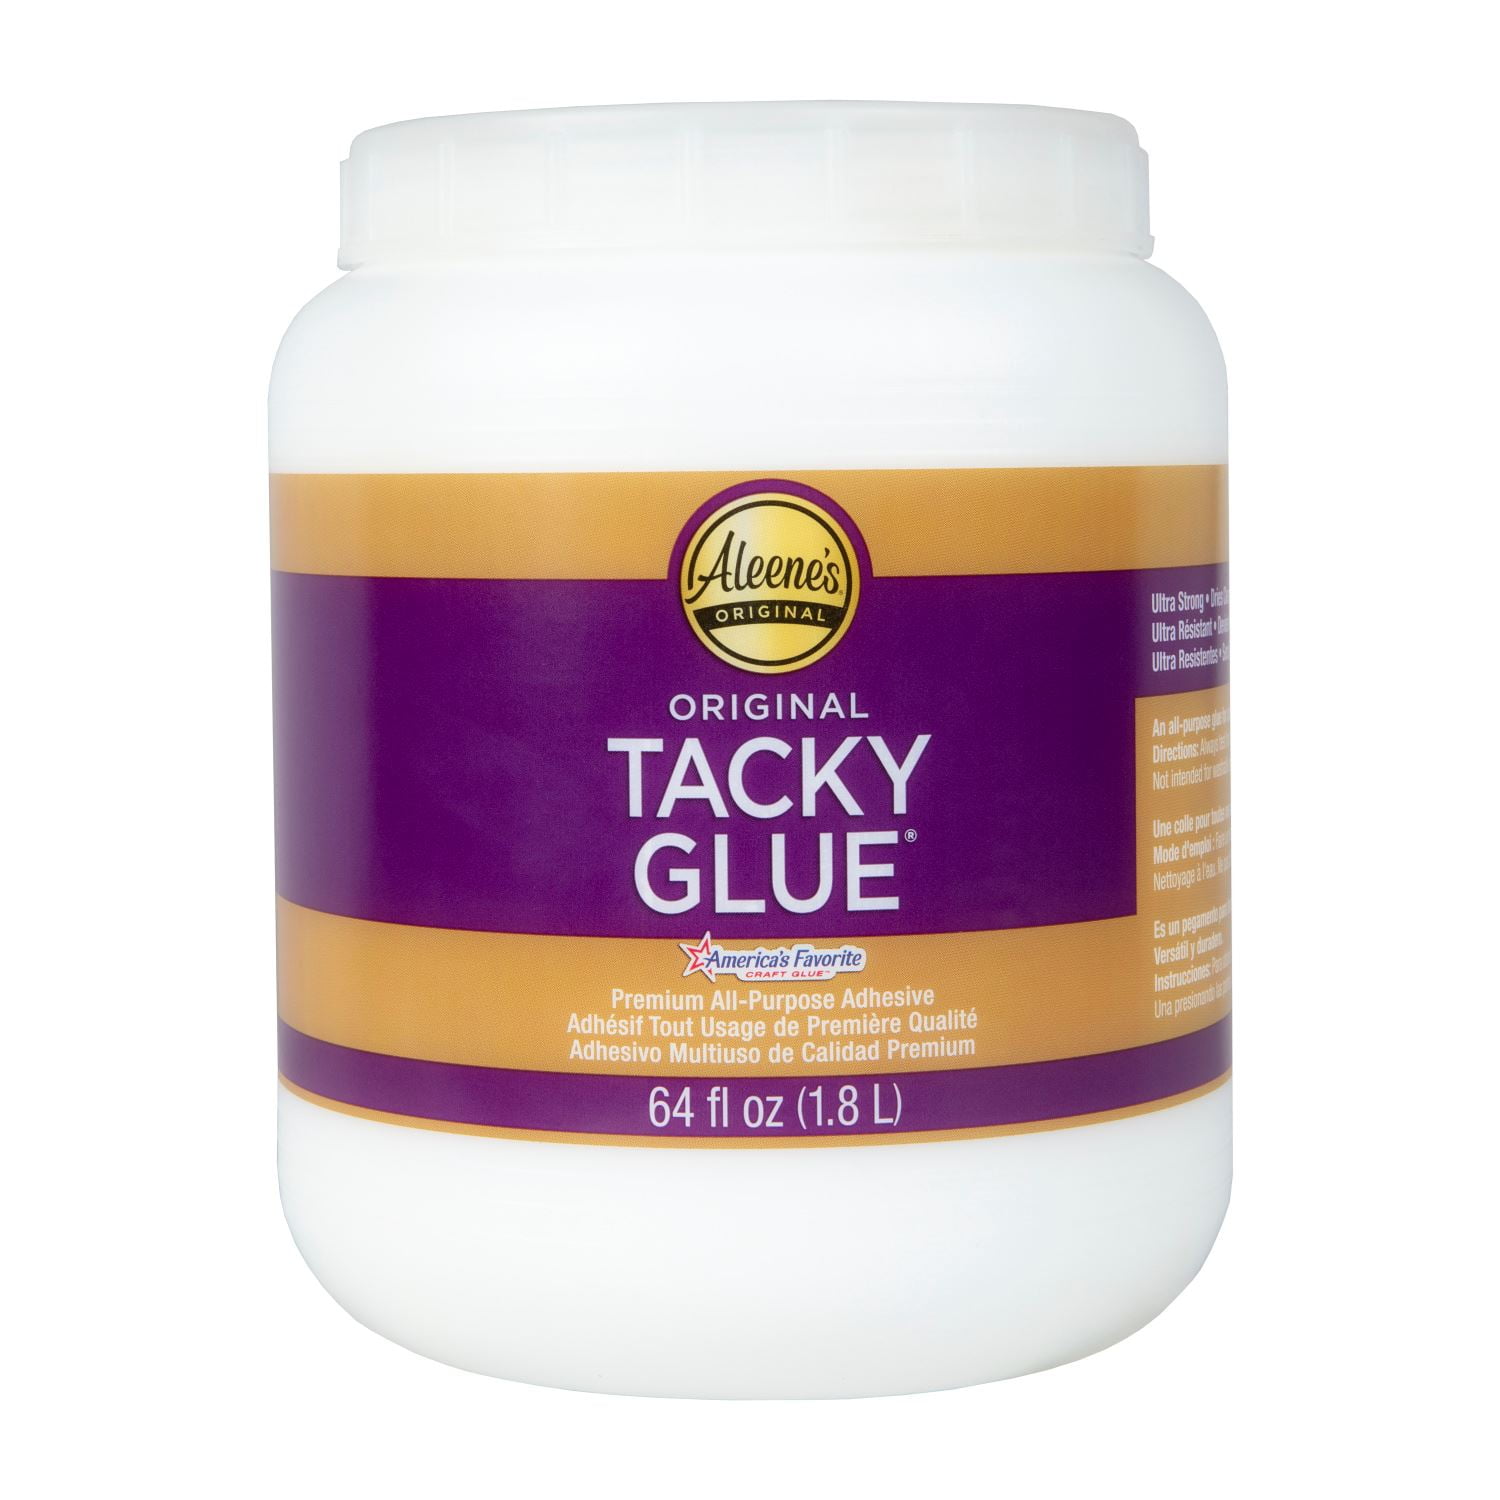 Aleene's Always Ready Clear Gel Tacky Glue 4 oz.